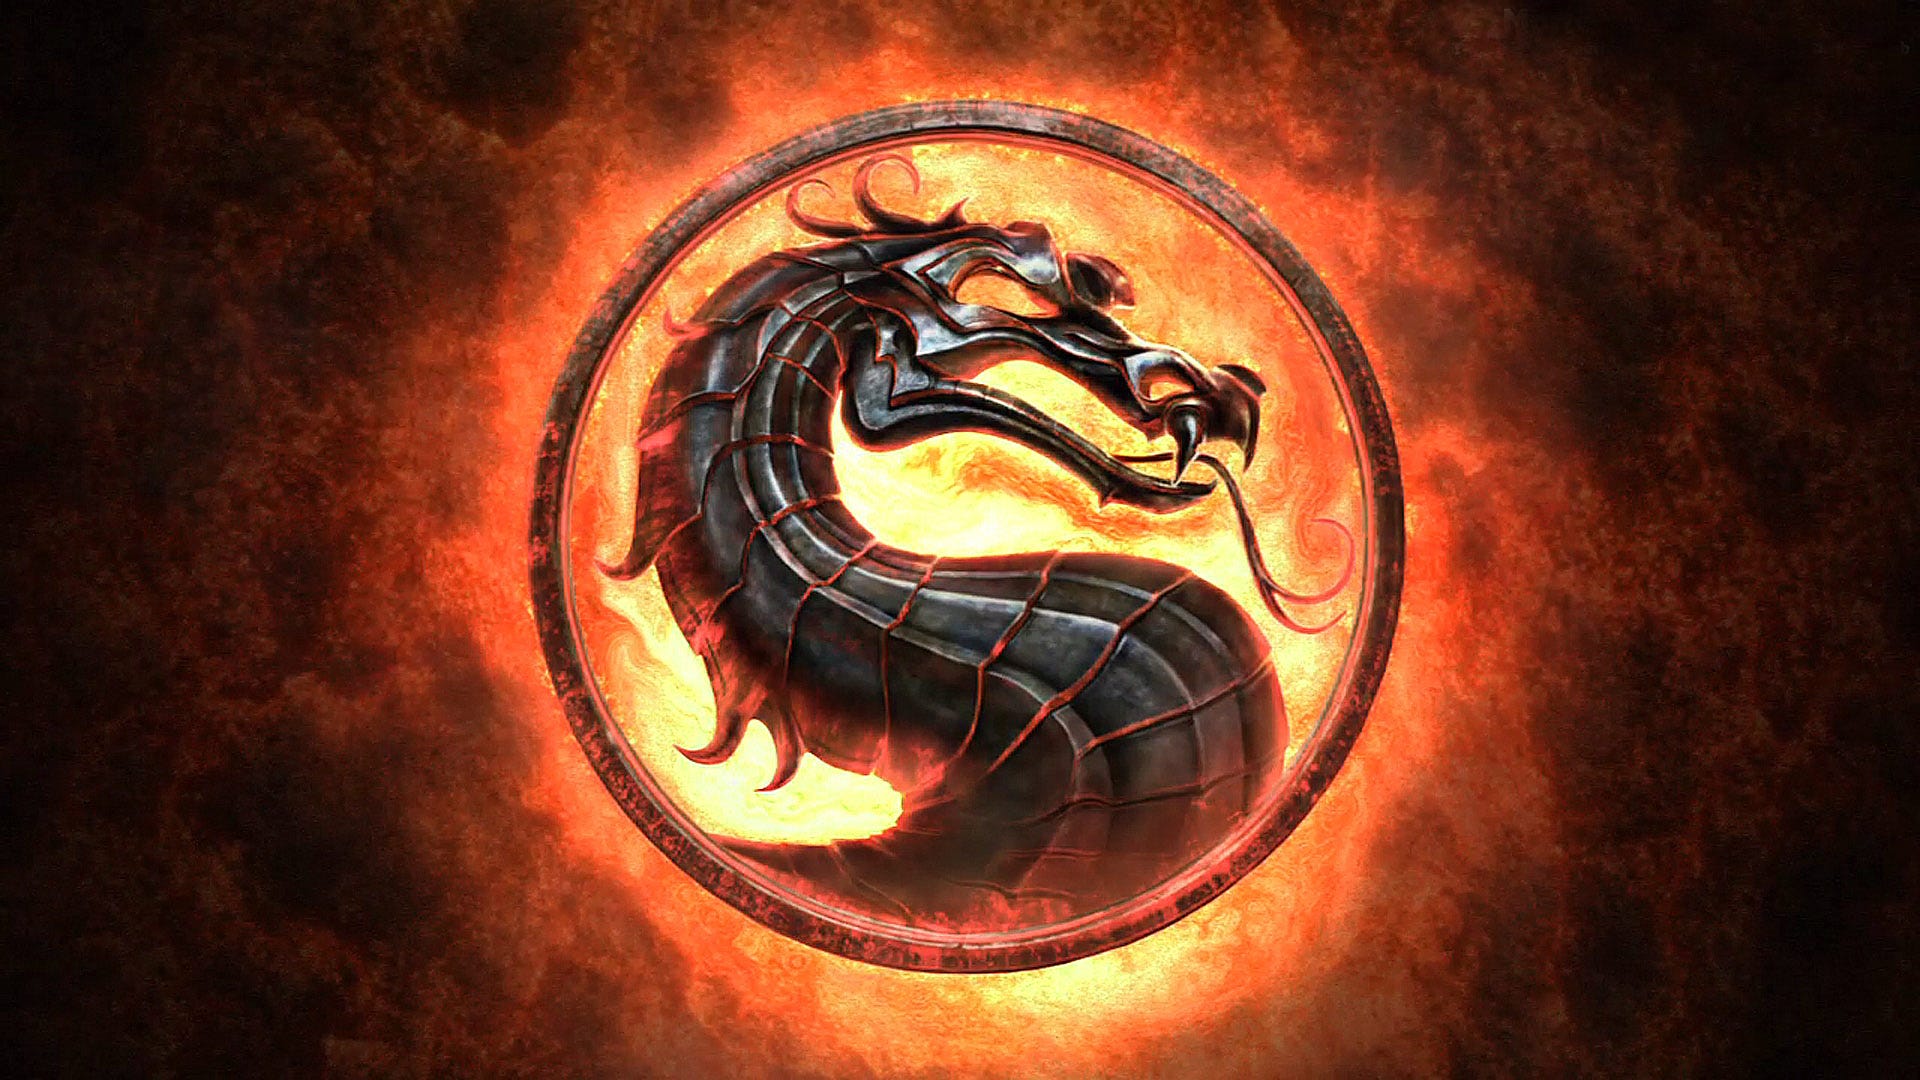 Personagem do jogo 2d, um dragão do mal